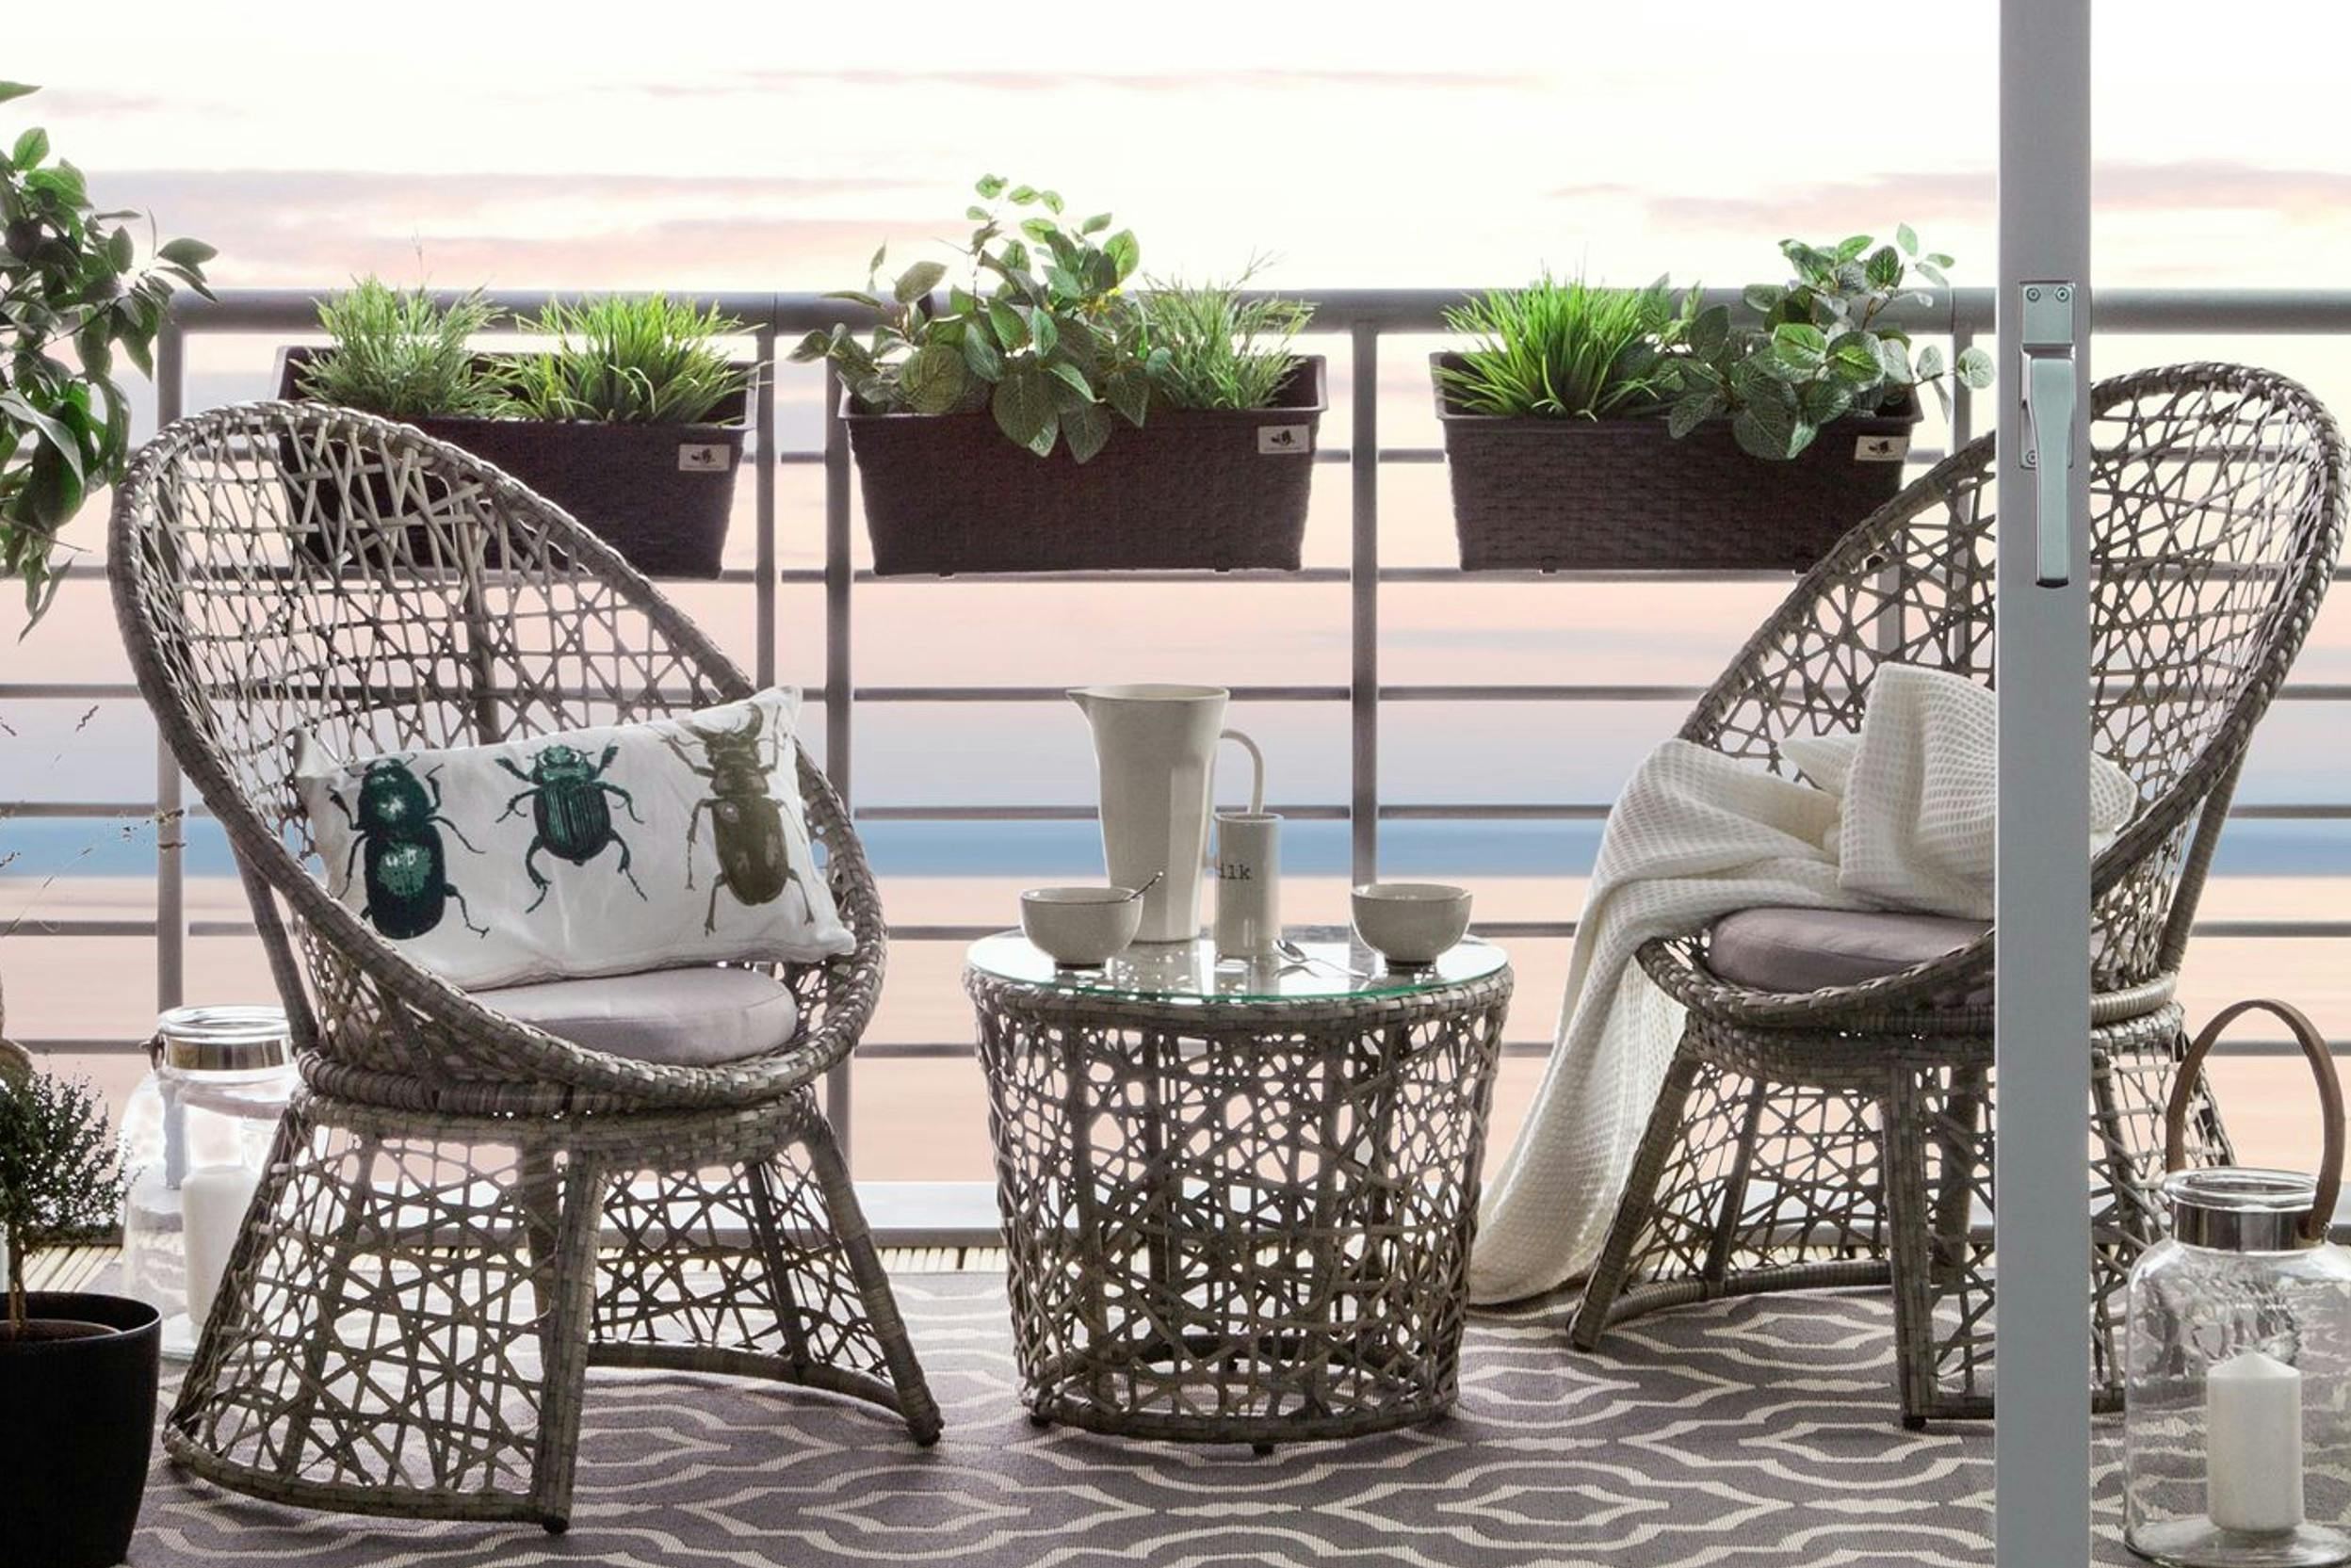 Balkonmöbel-Set aus Polyrattan auf Balkon mit Outdoor-Teppich